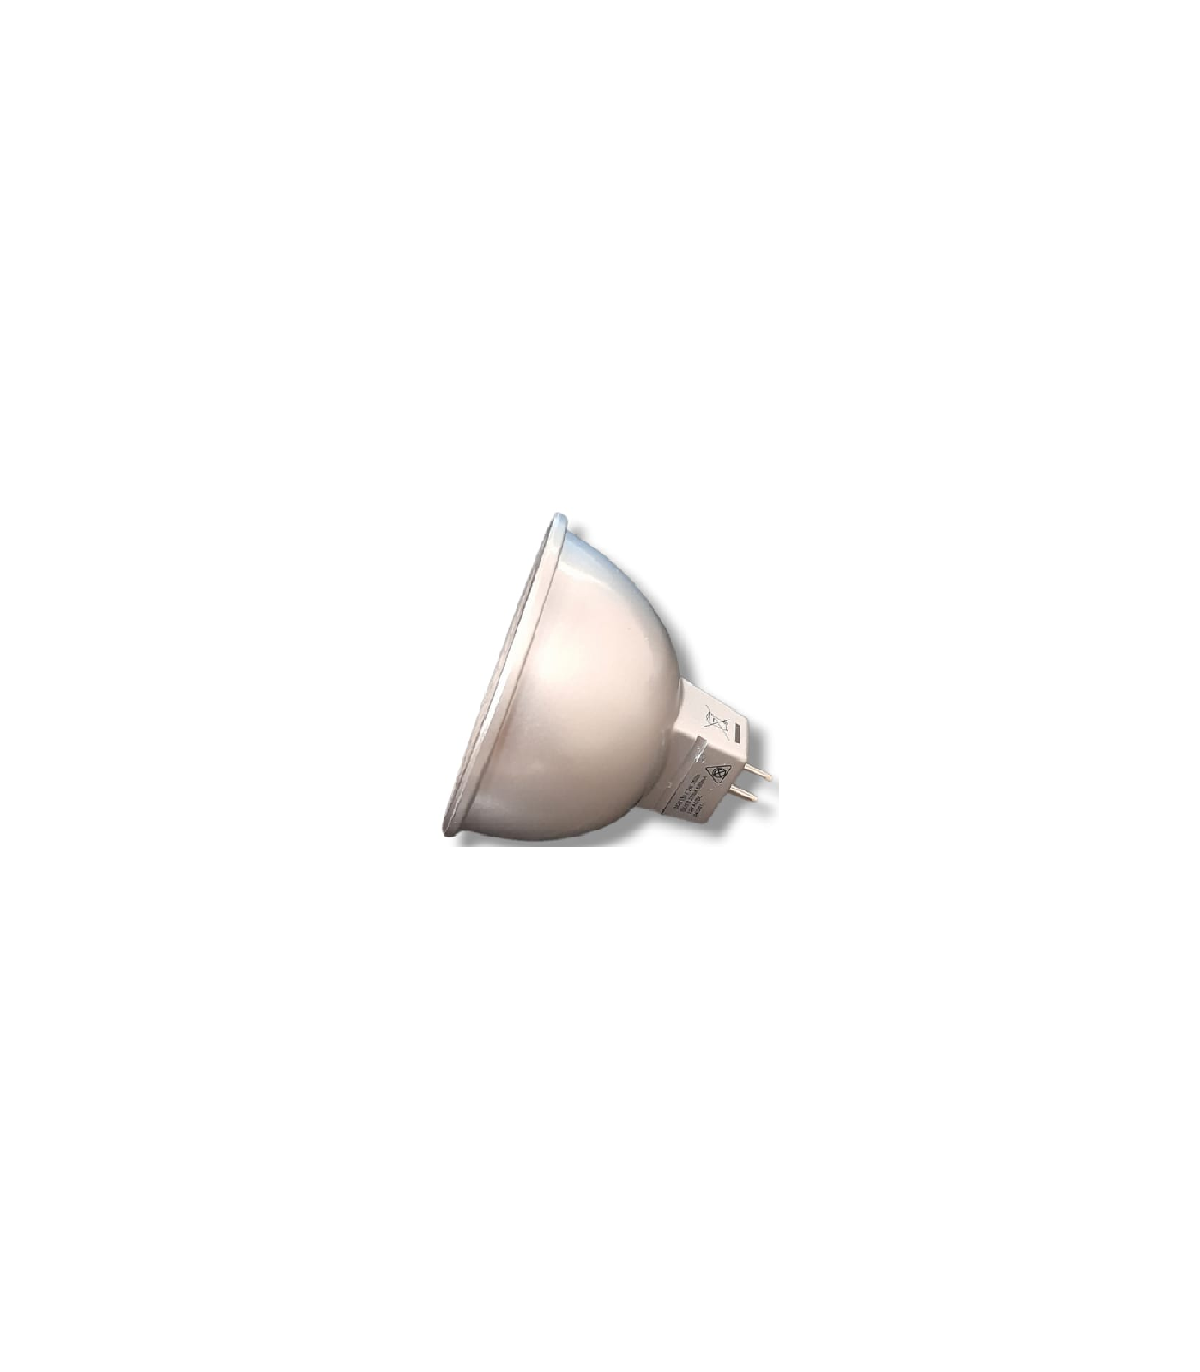 Osram Ampoule LED à réflecteur MR16 GU5.3 Blanc chaud 20 W 230 lm